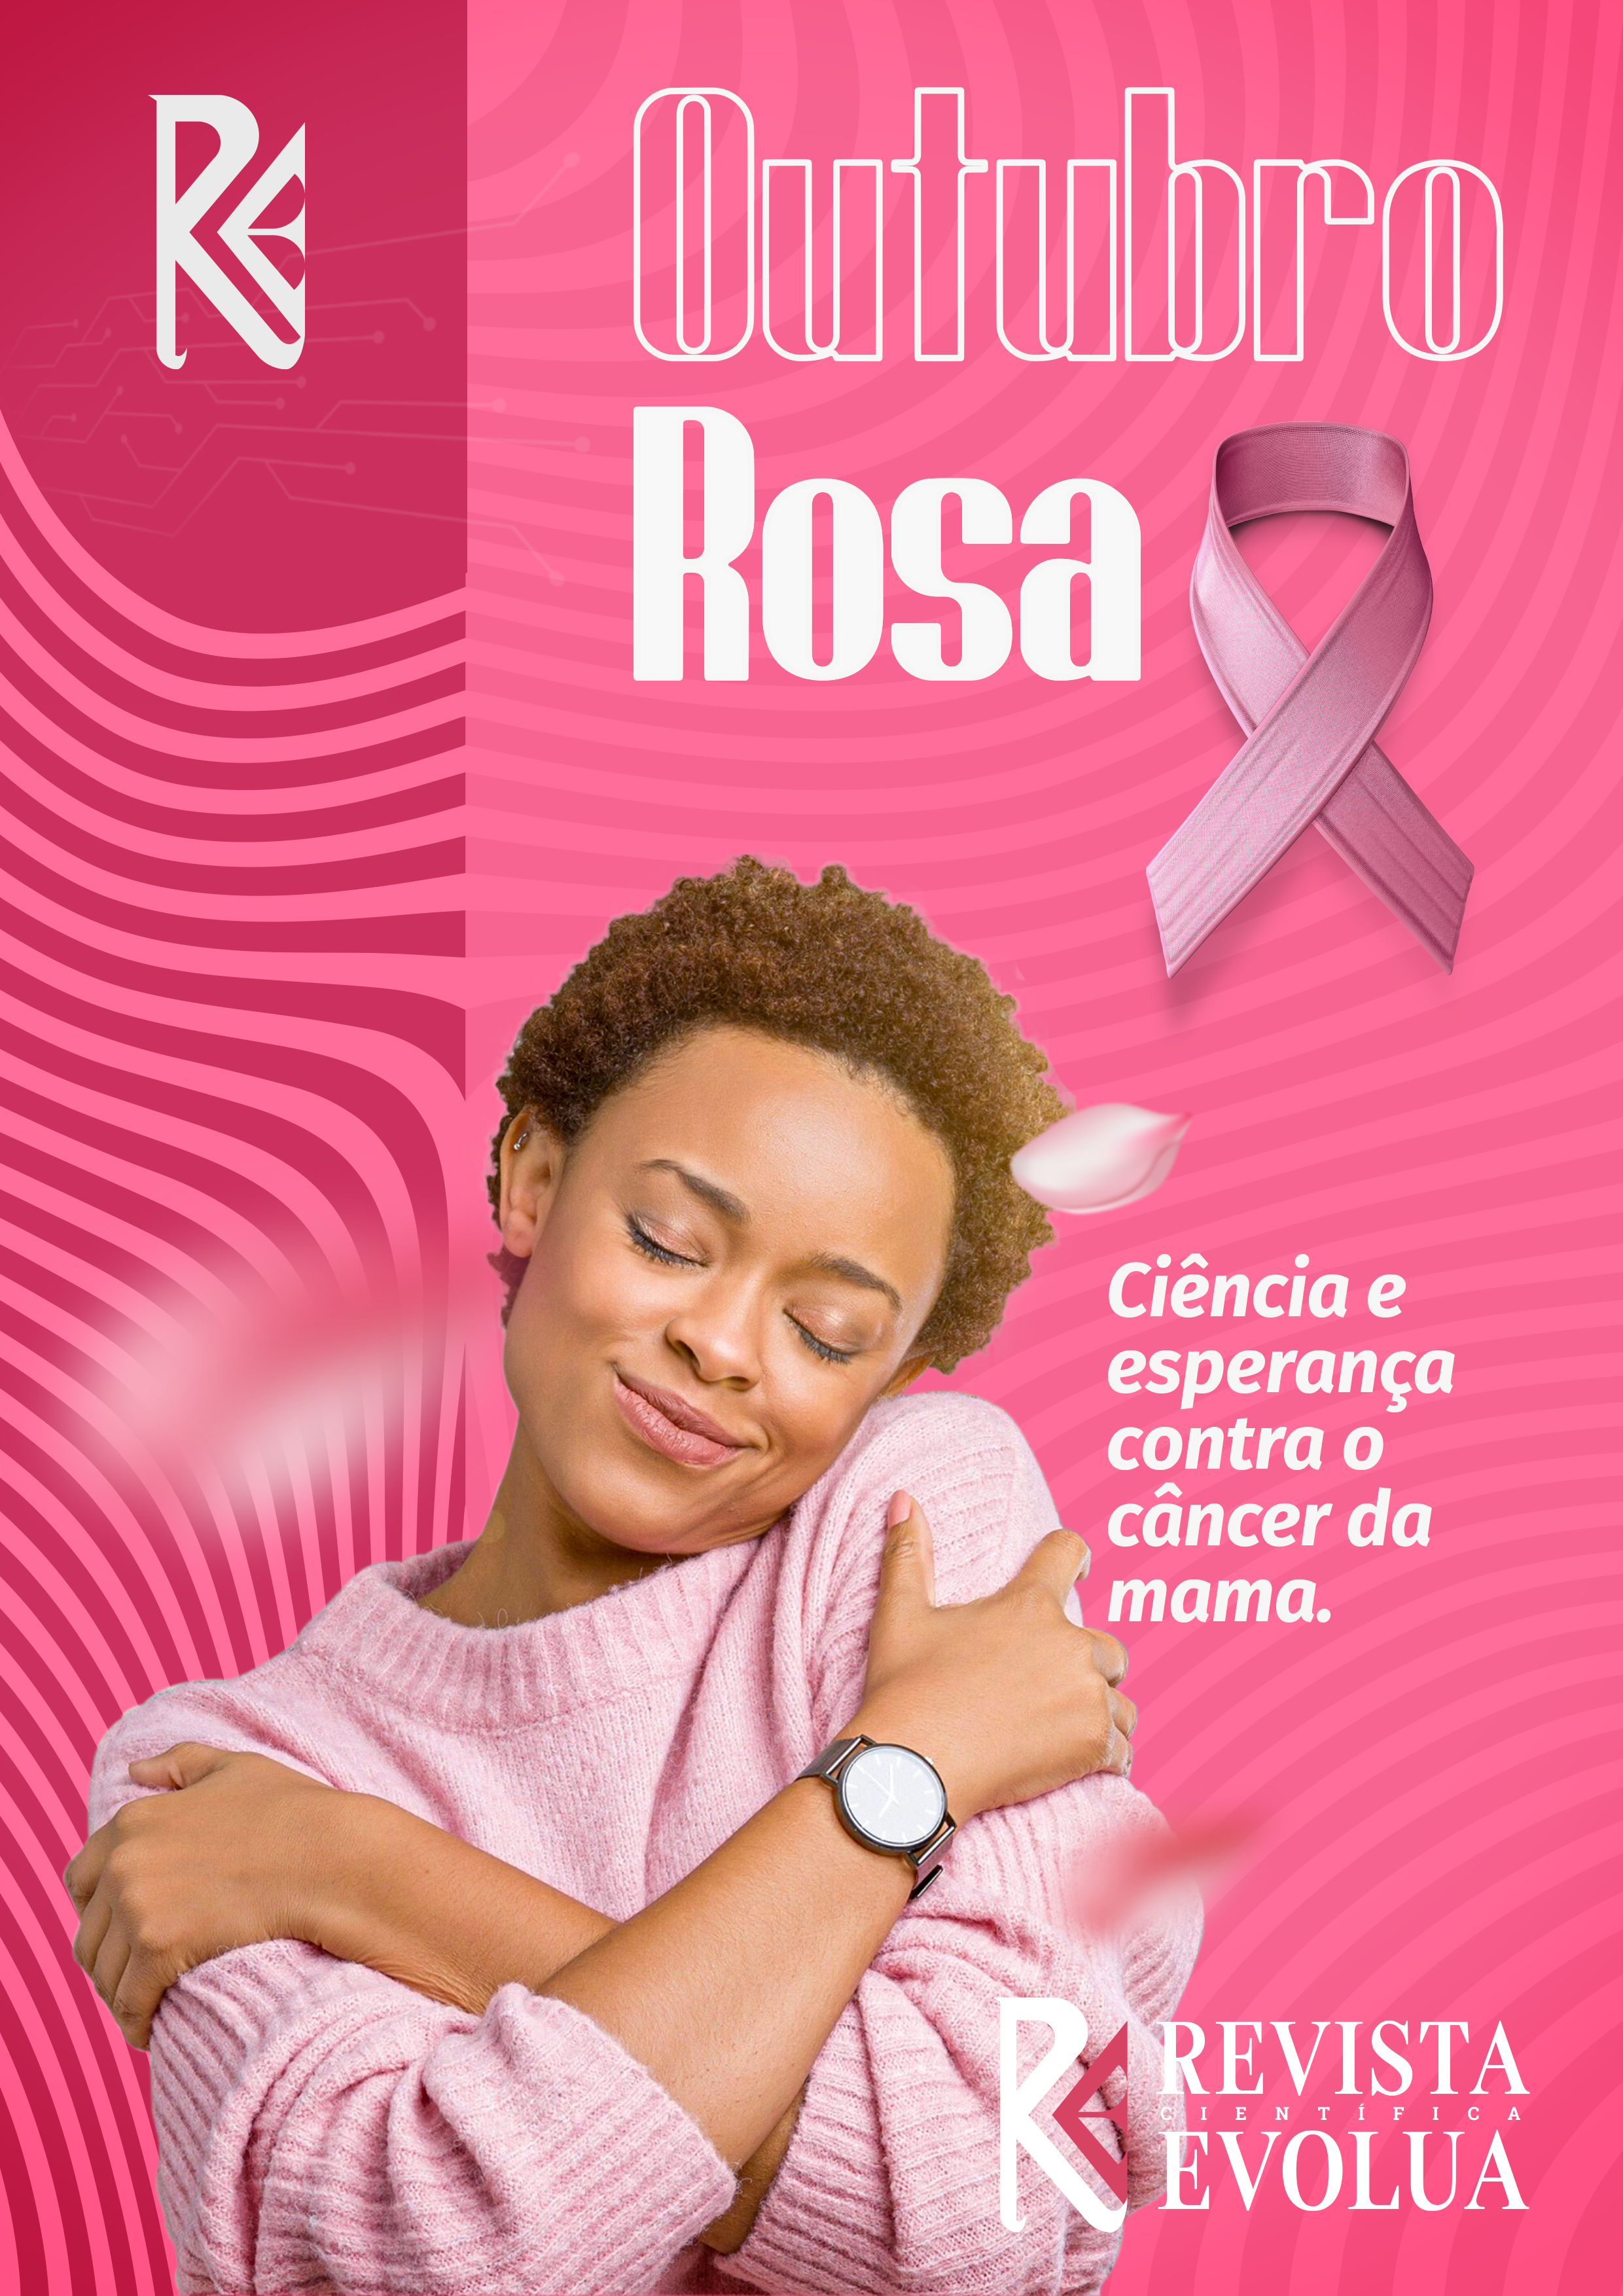 Imagem de uma mulher com uma fita rosa na cabeça ou no peito, segurando uma mão no peito, com a frase "Outubro Rosa: Ciência e Esperança  Contra o Câncer de Mama"